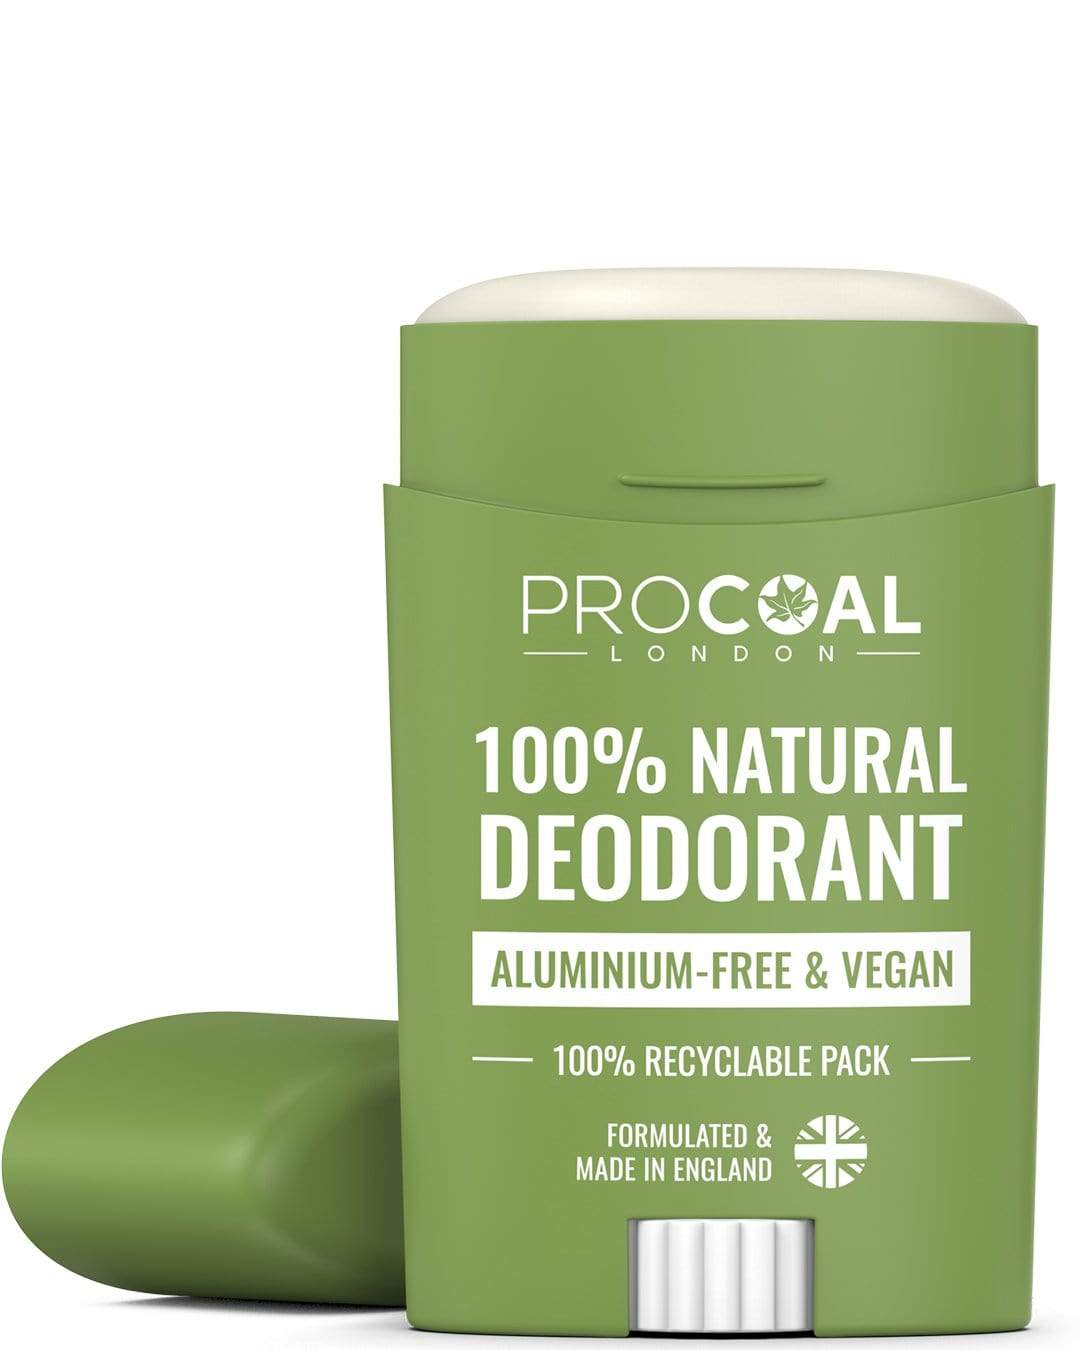 100% Natural Deodorants, Baking Soda Free, Vegan & Aluminium